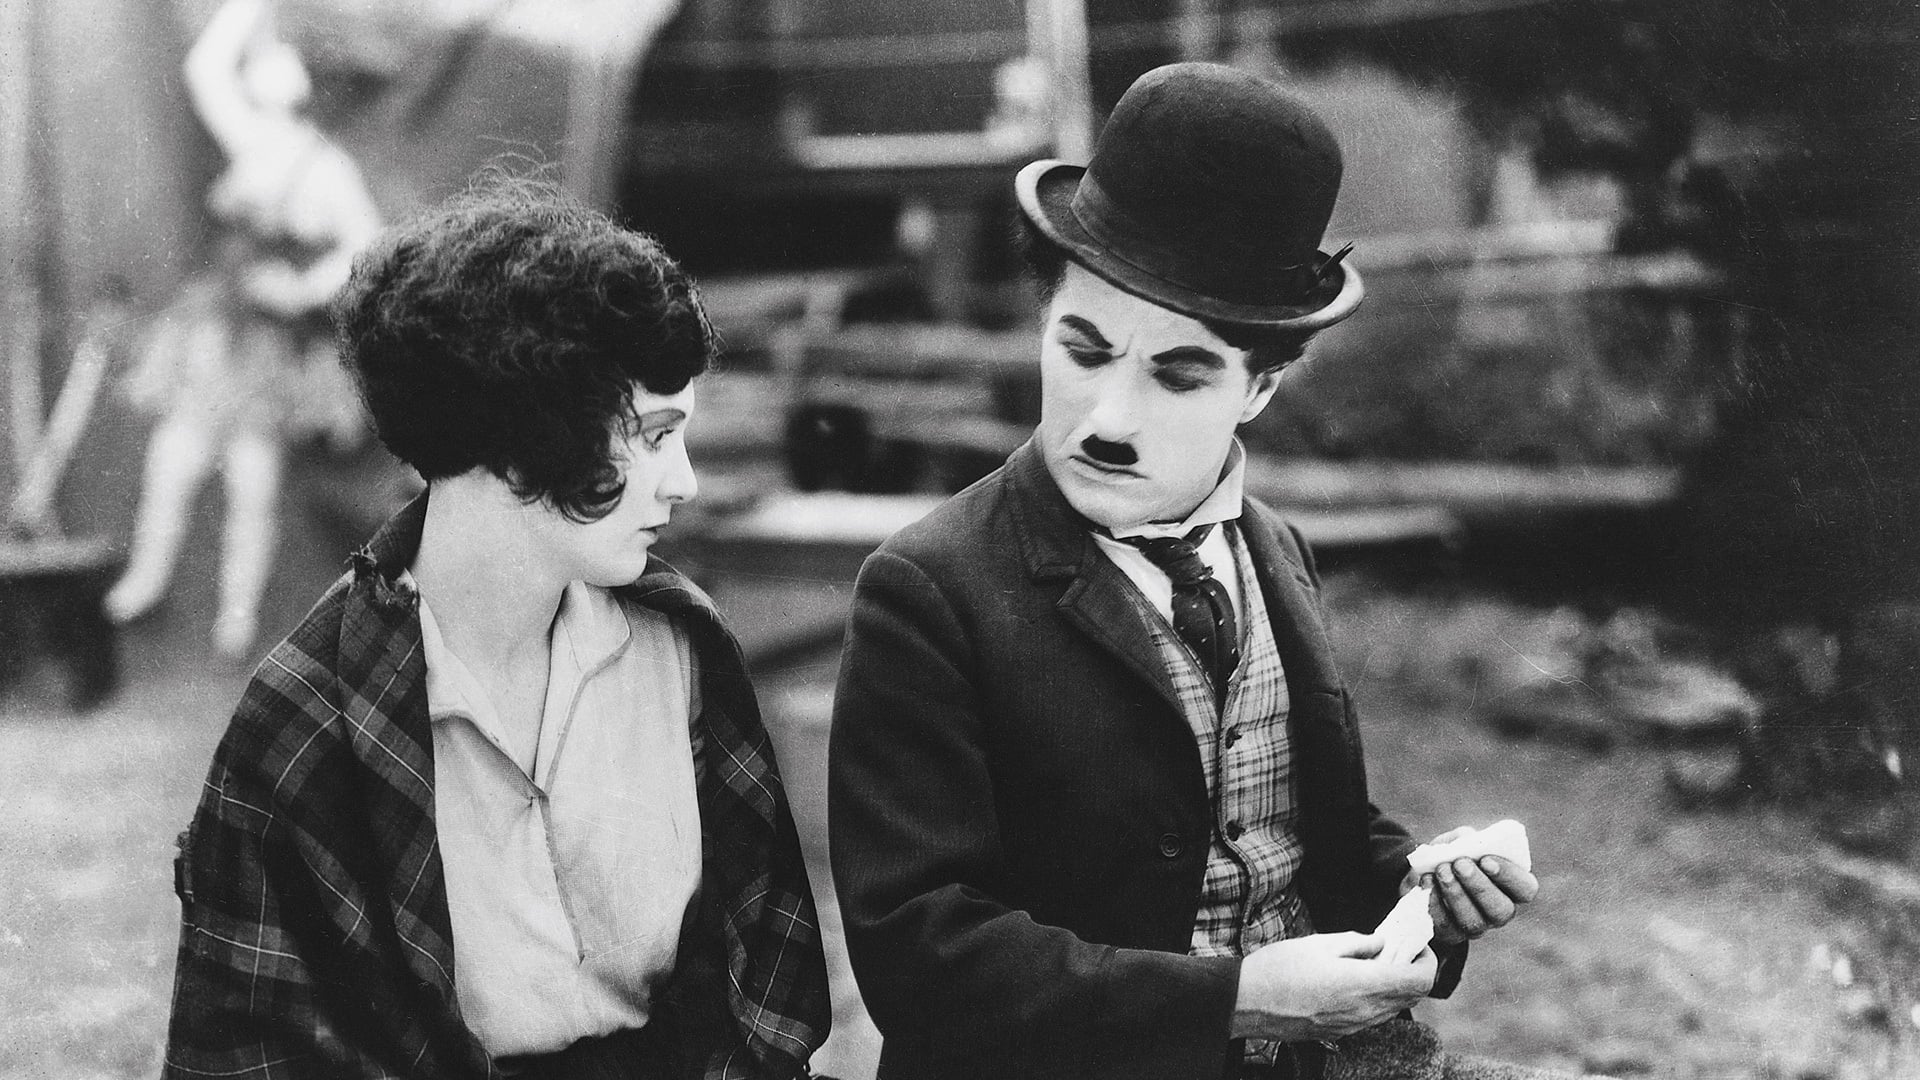 دانلود فیلم The Circus 1928